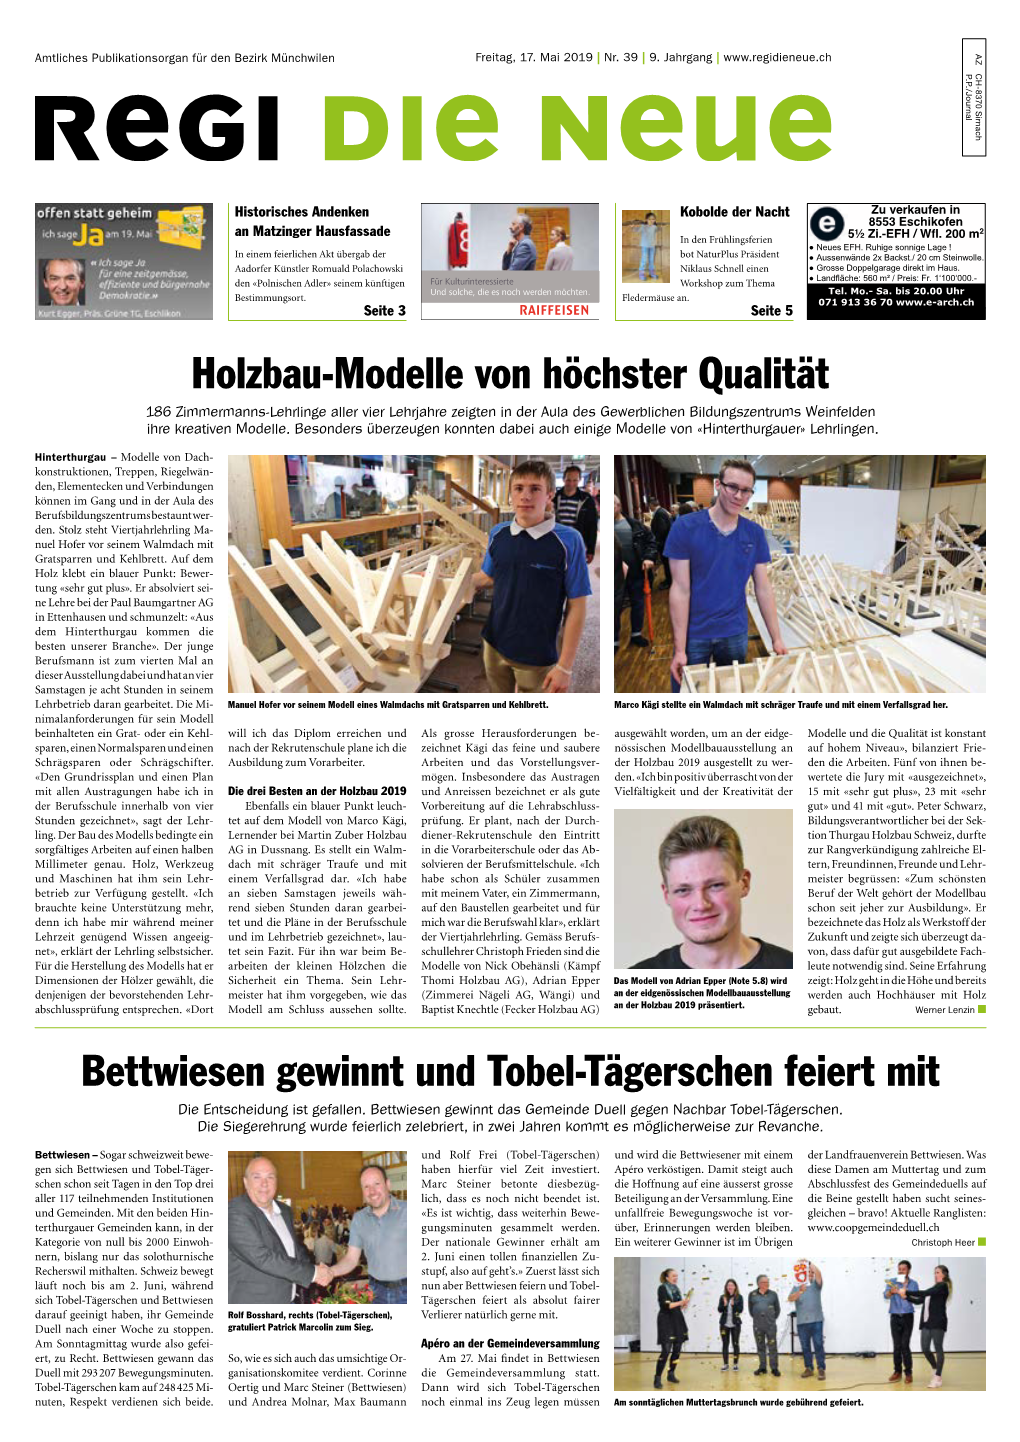 Holzbau-Modelle Von Höchster Qualität Bettwiesen Gewinnt Und